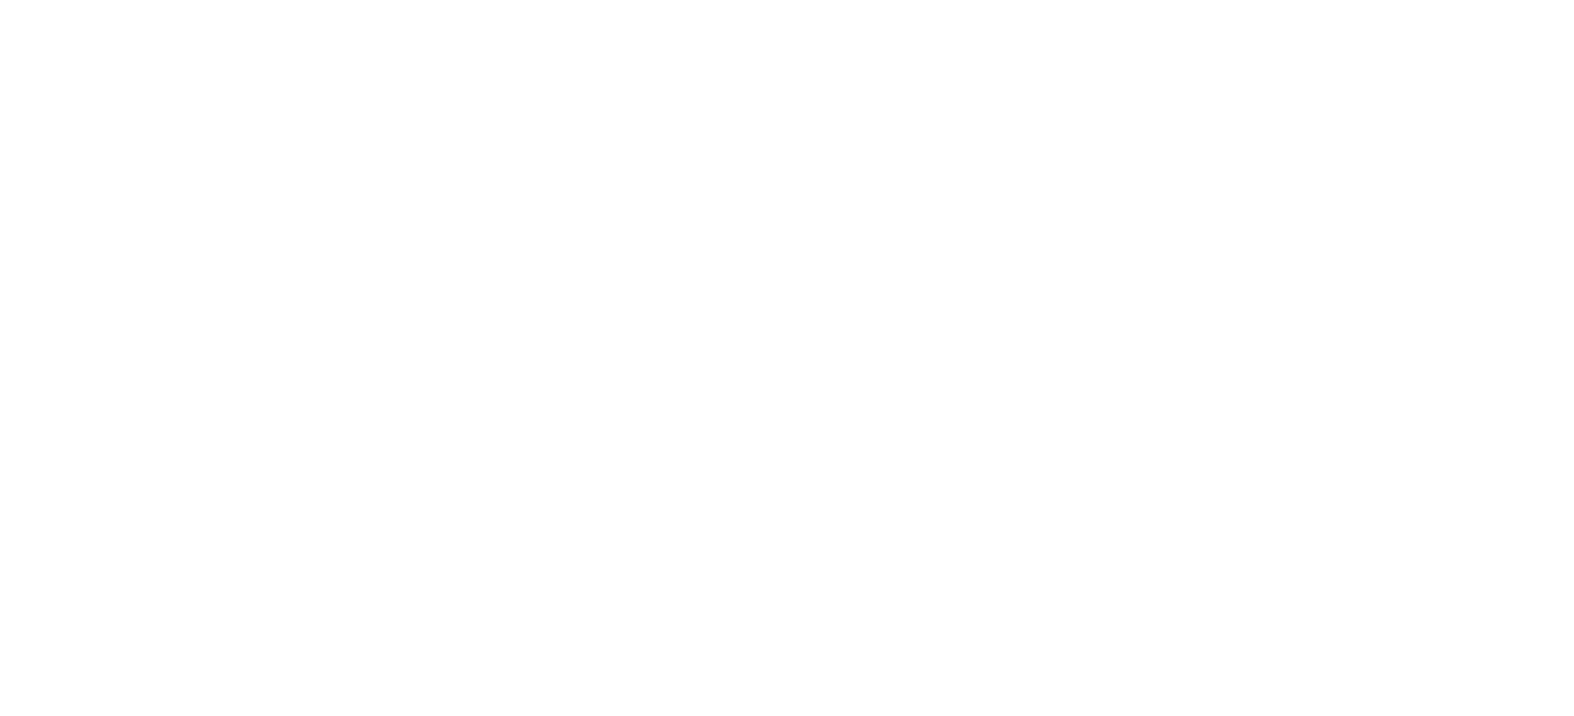 Park Hotels & Resorts

 logo large for dark backgrounds (transparent PNG)